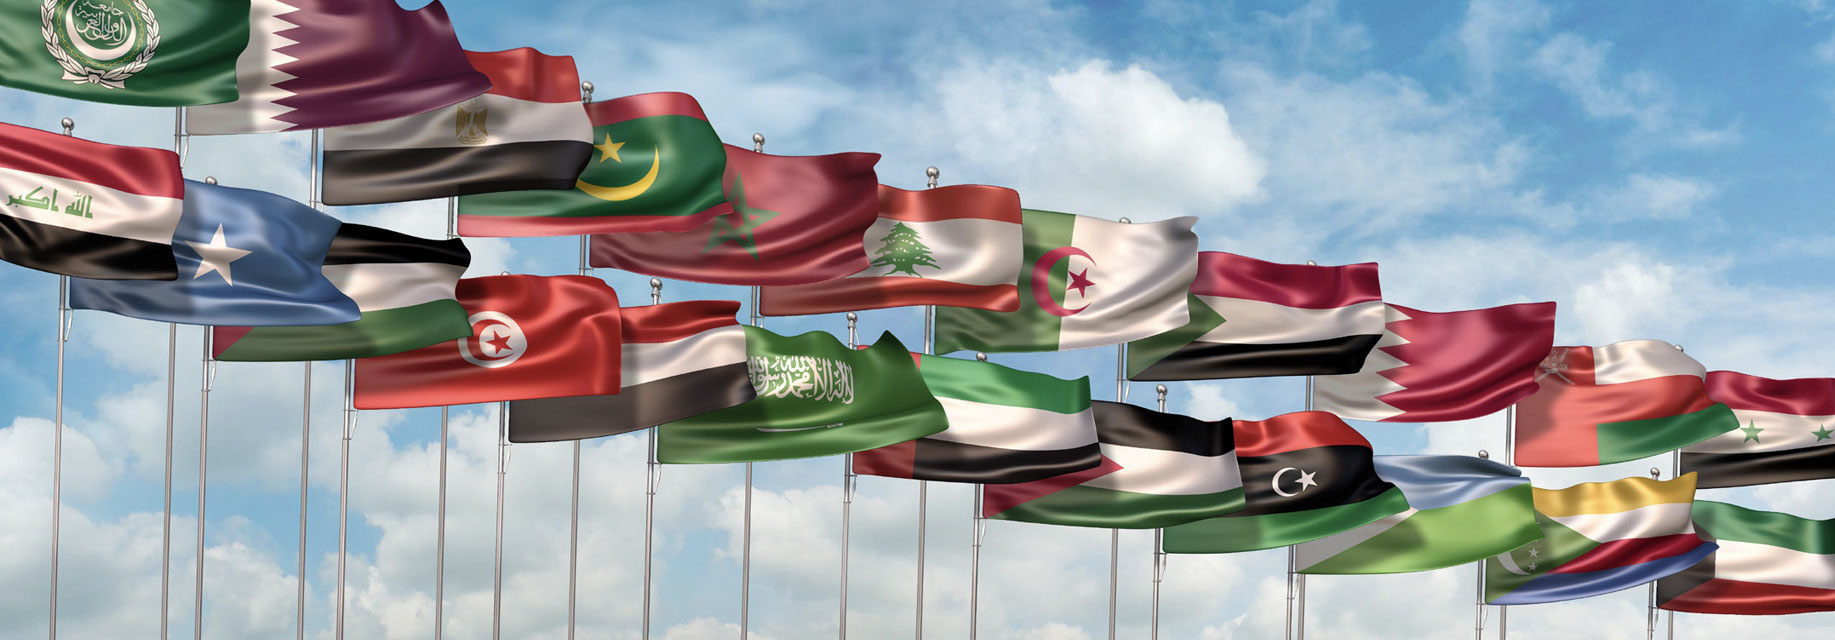 تقرير حالة الإدارة الحكومية في العالم العربي: واقع وآفاق